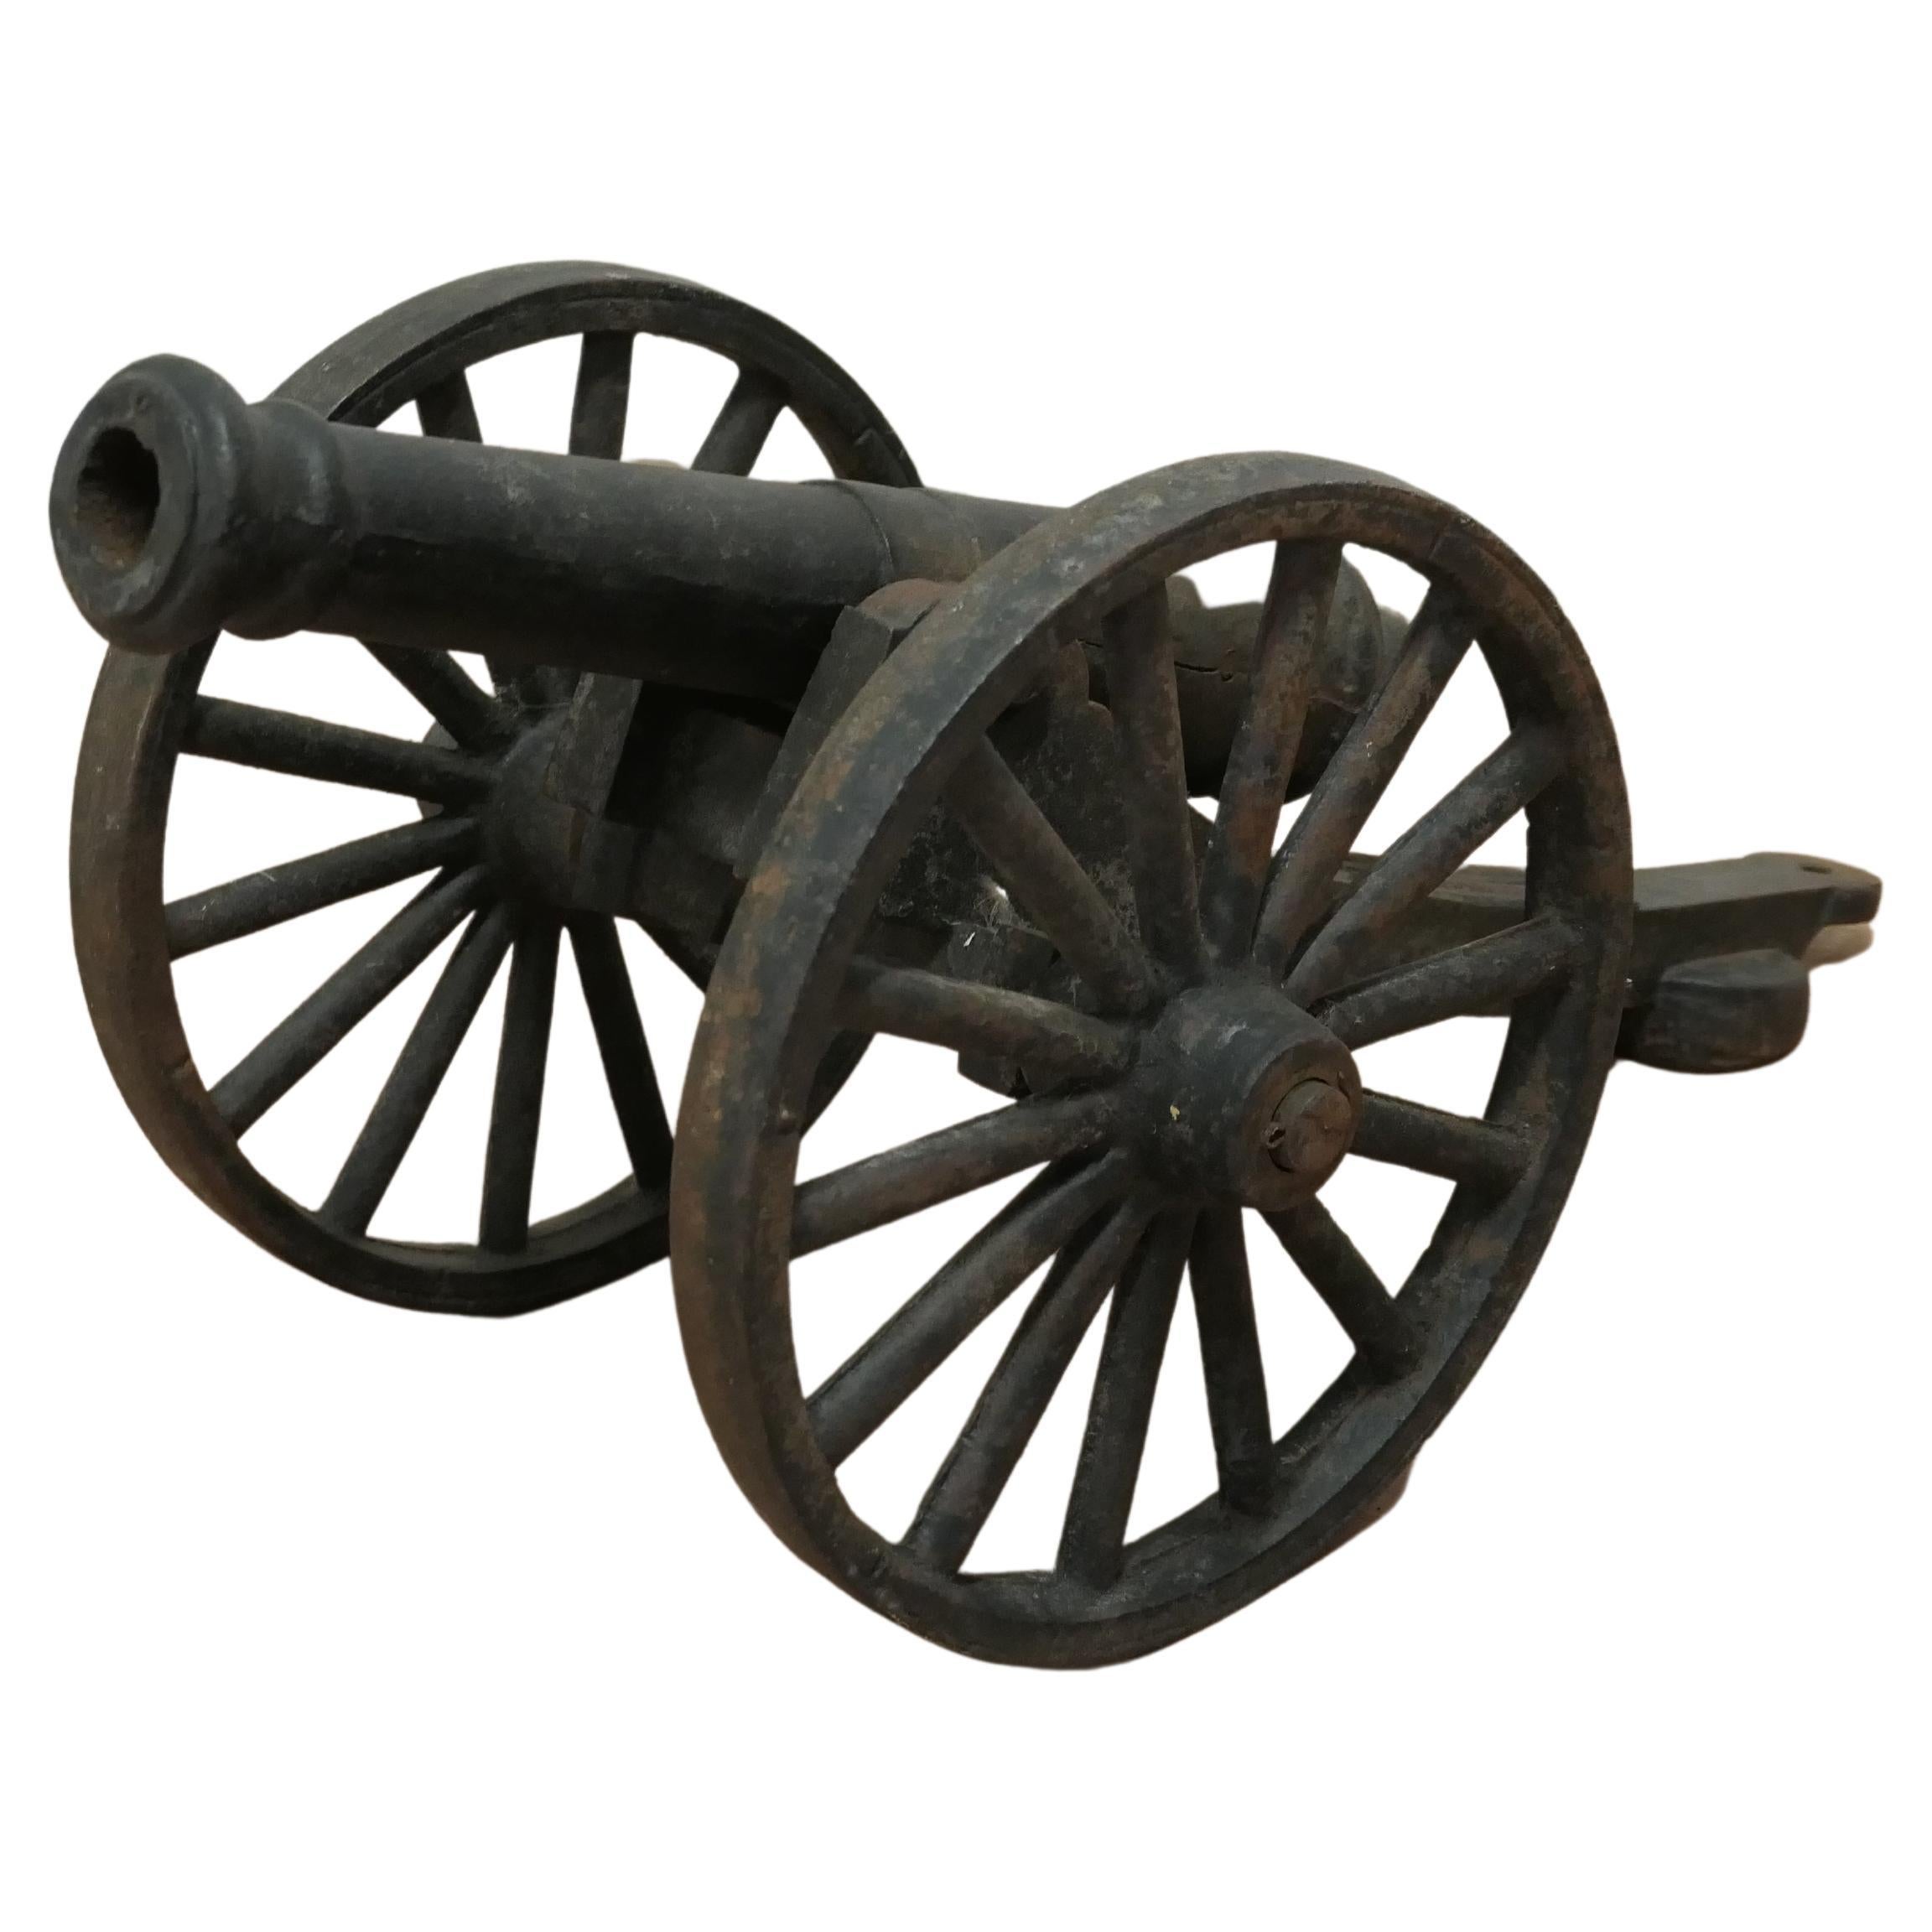 Modellfeldgewehr des 19. Jahrhunderts auf Kutschen, gusseiserner Porzellankanon